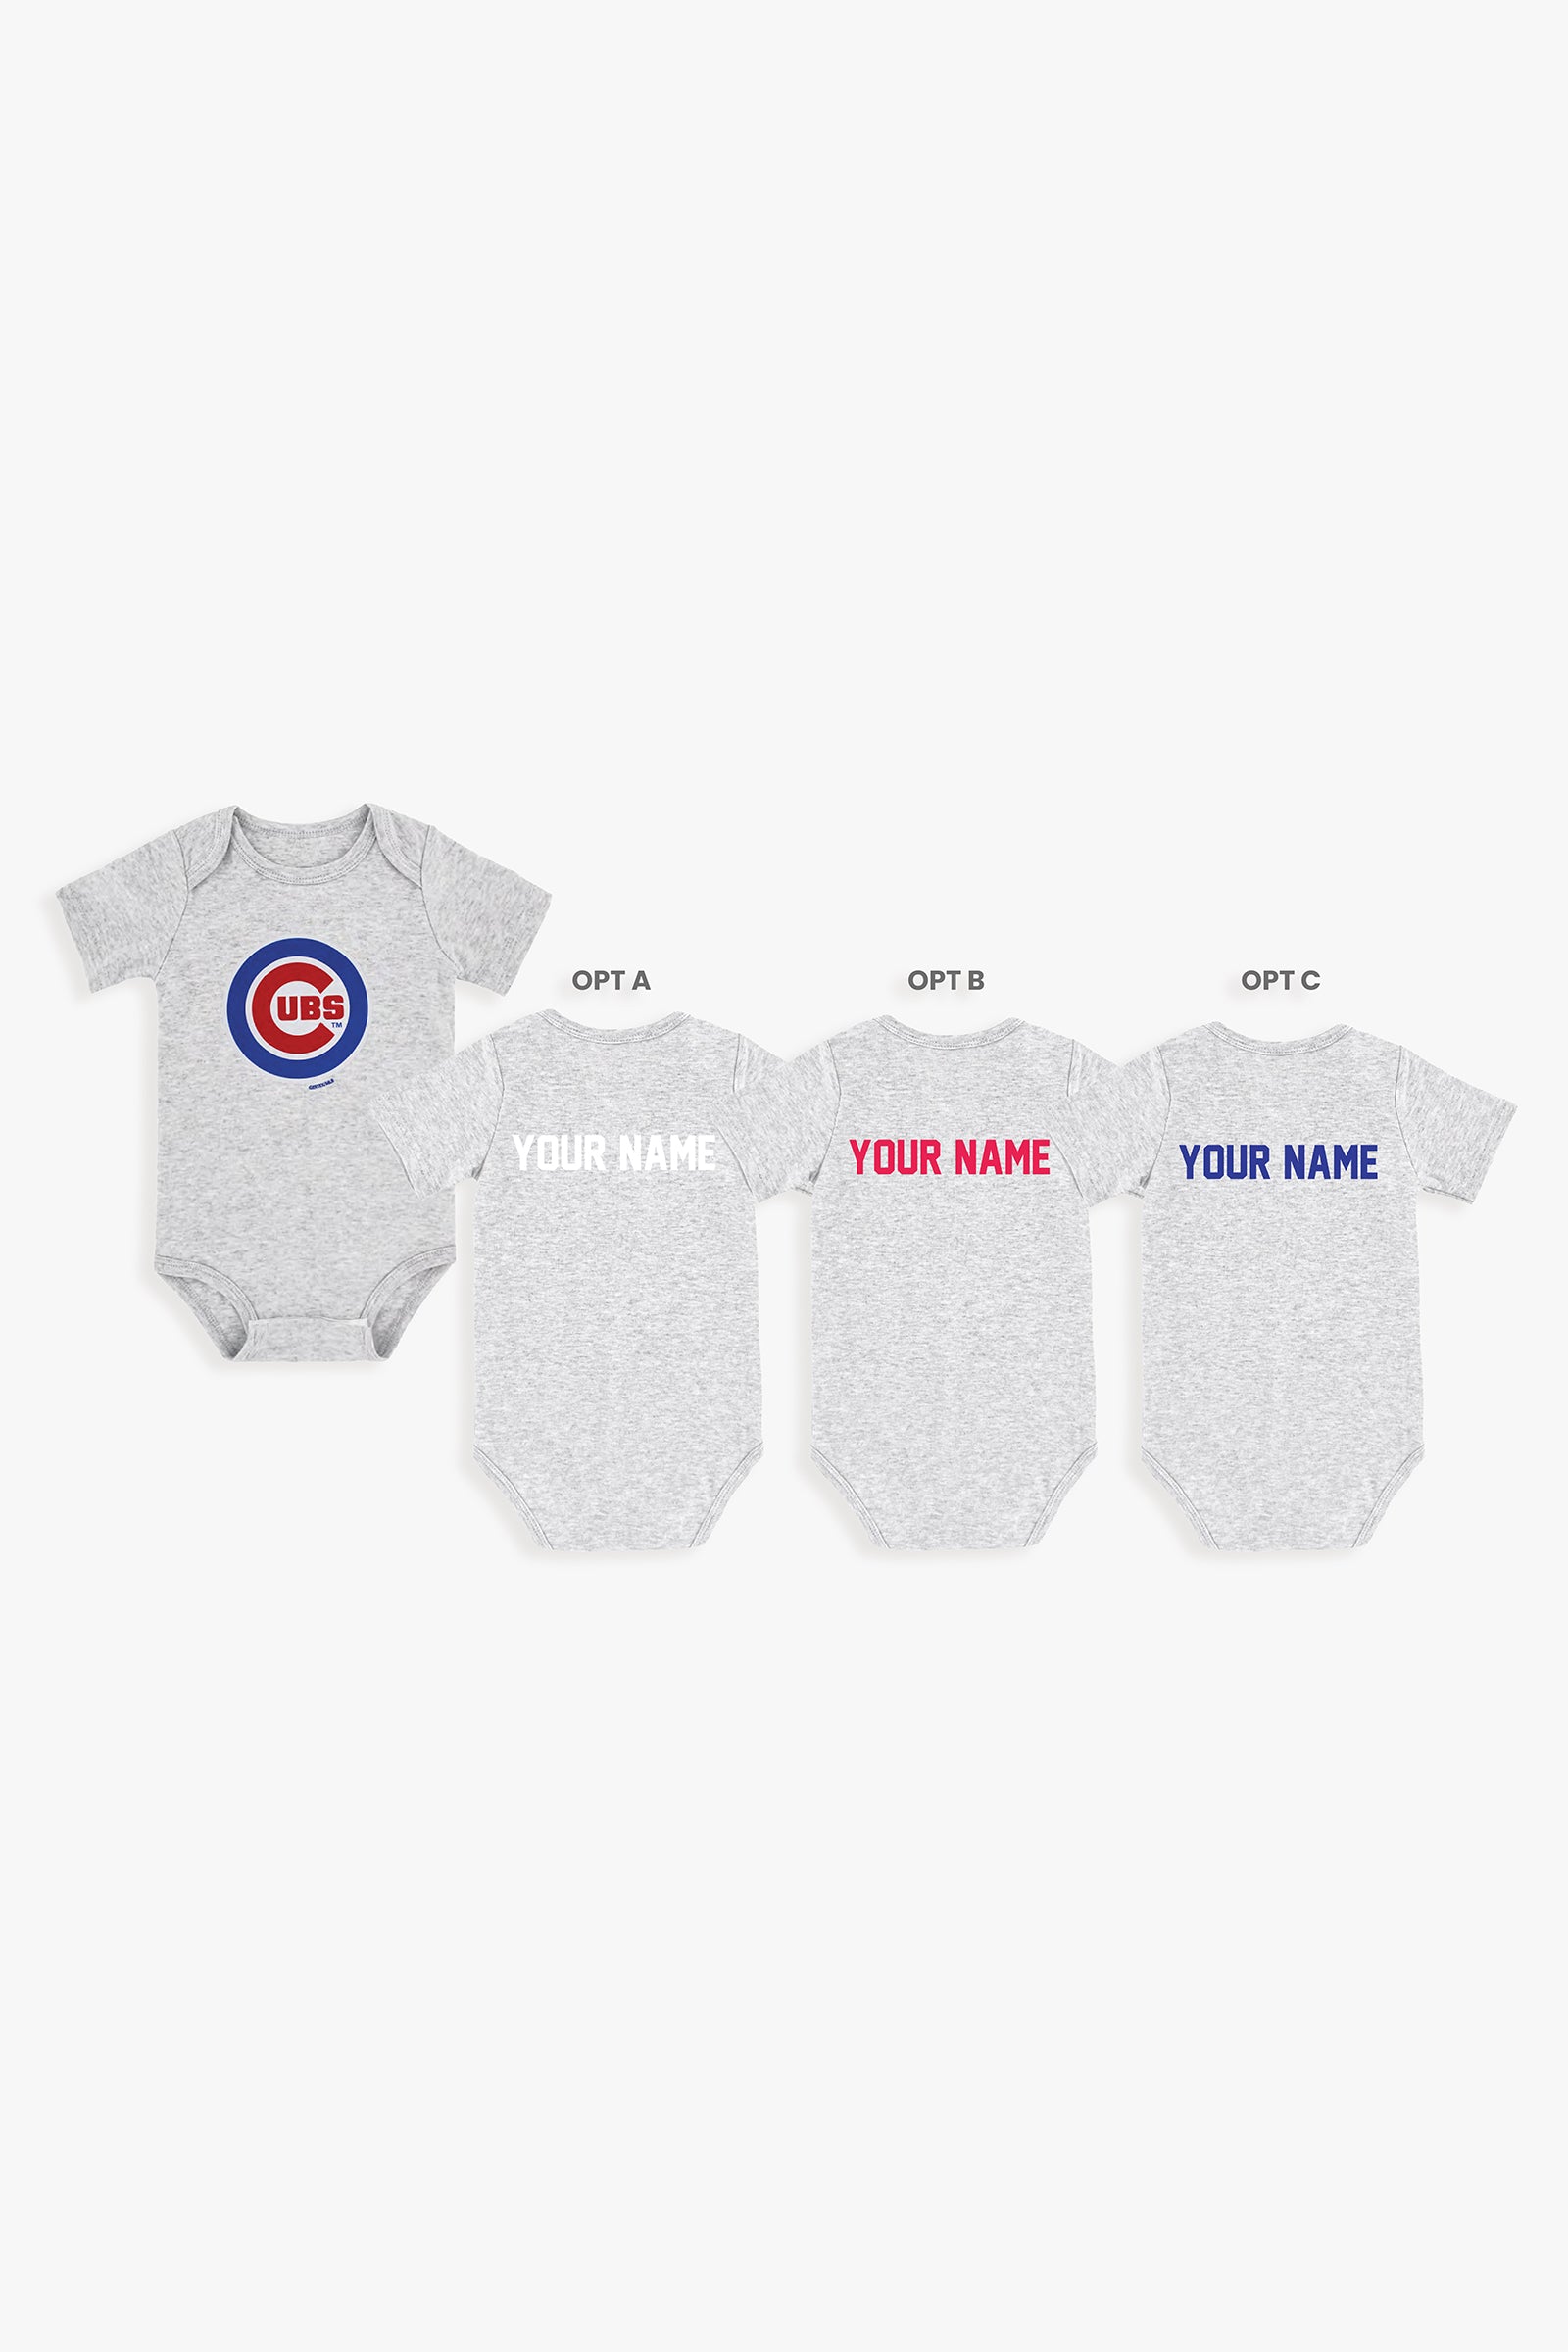 Gertex Customizable MLB Baby Onesie Bodysuit in Grey (6-9 Months)